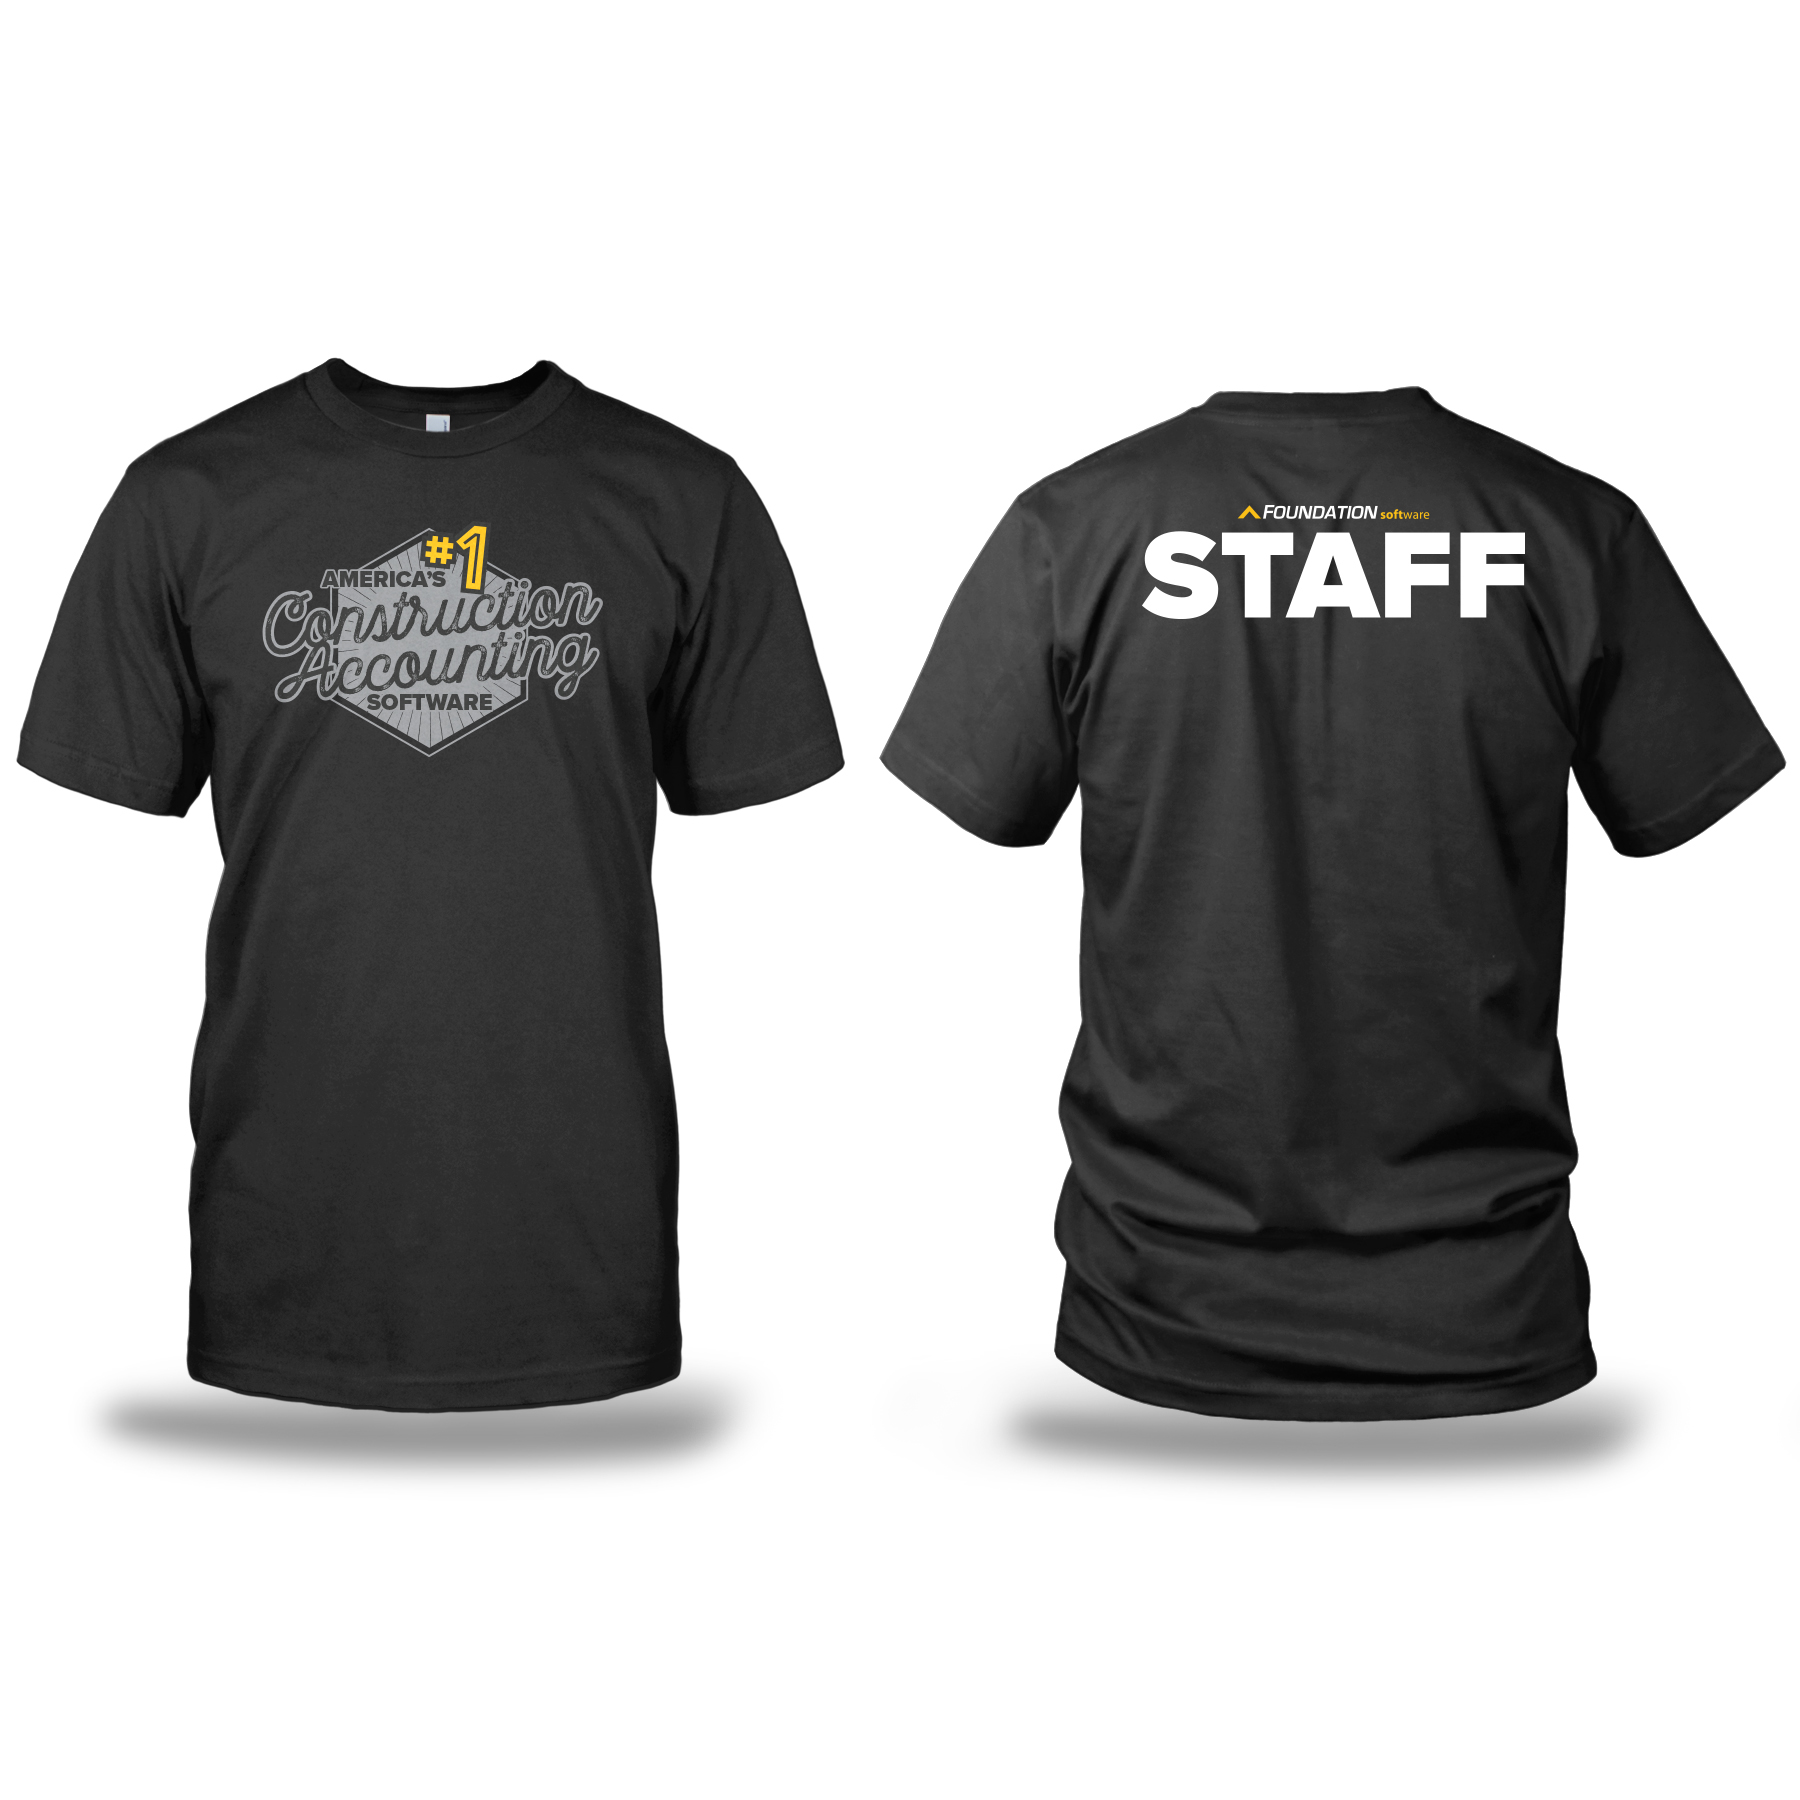 Event Staff T-shirt